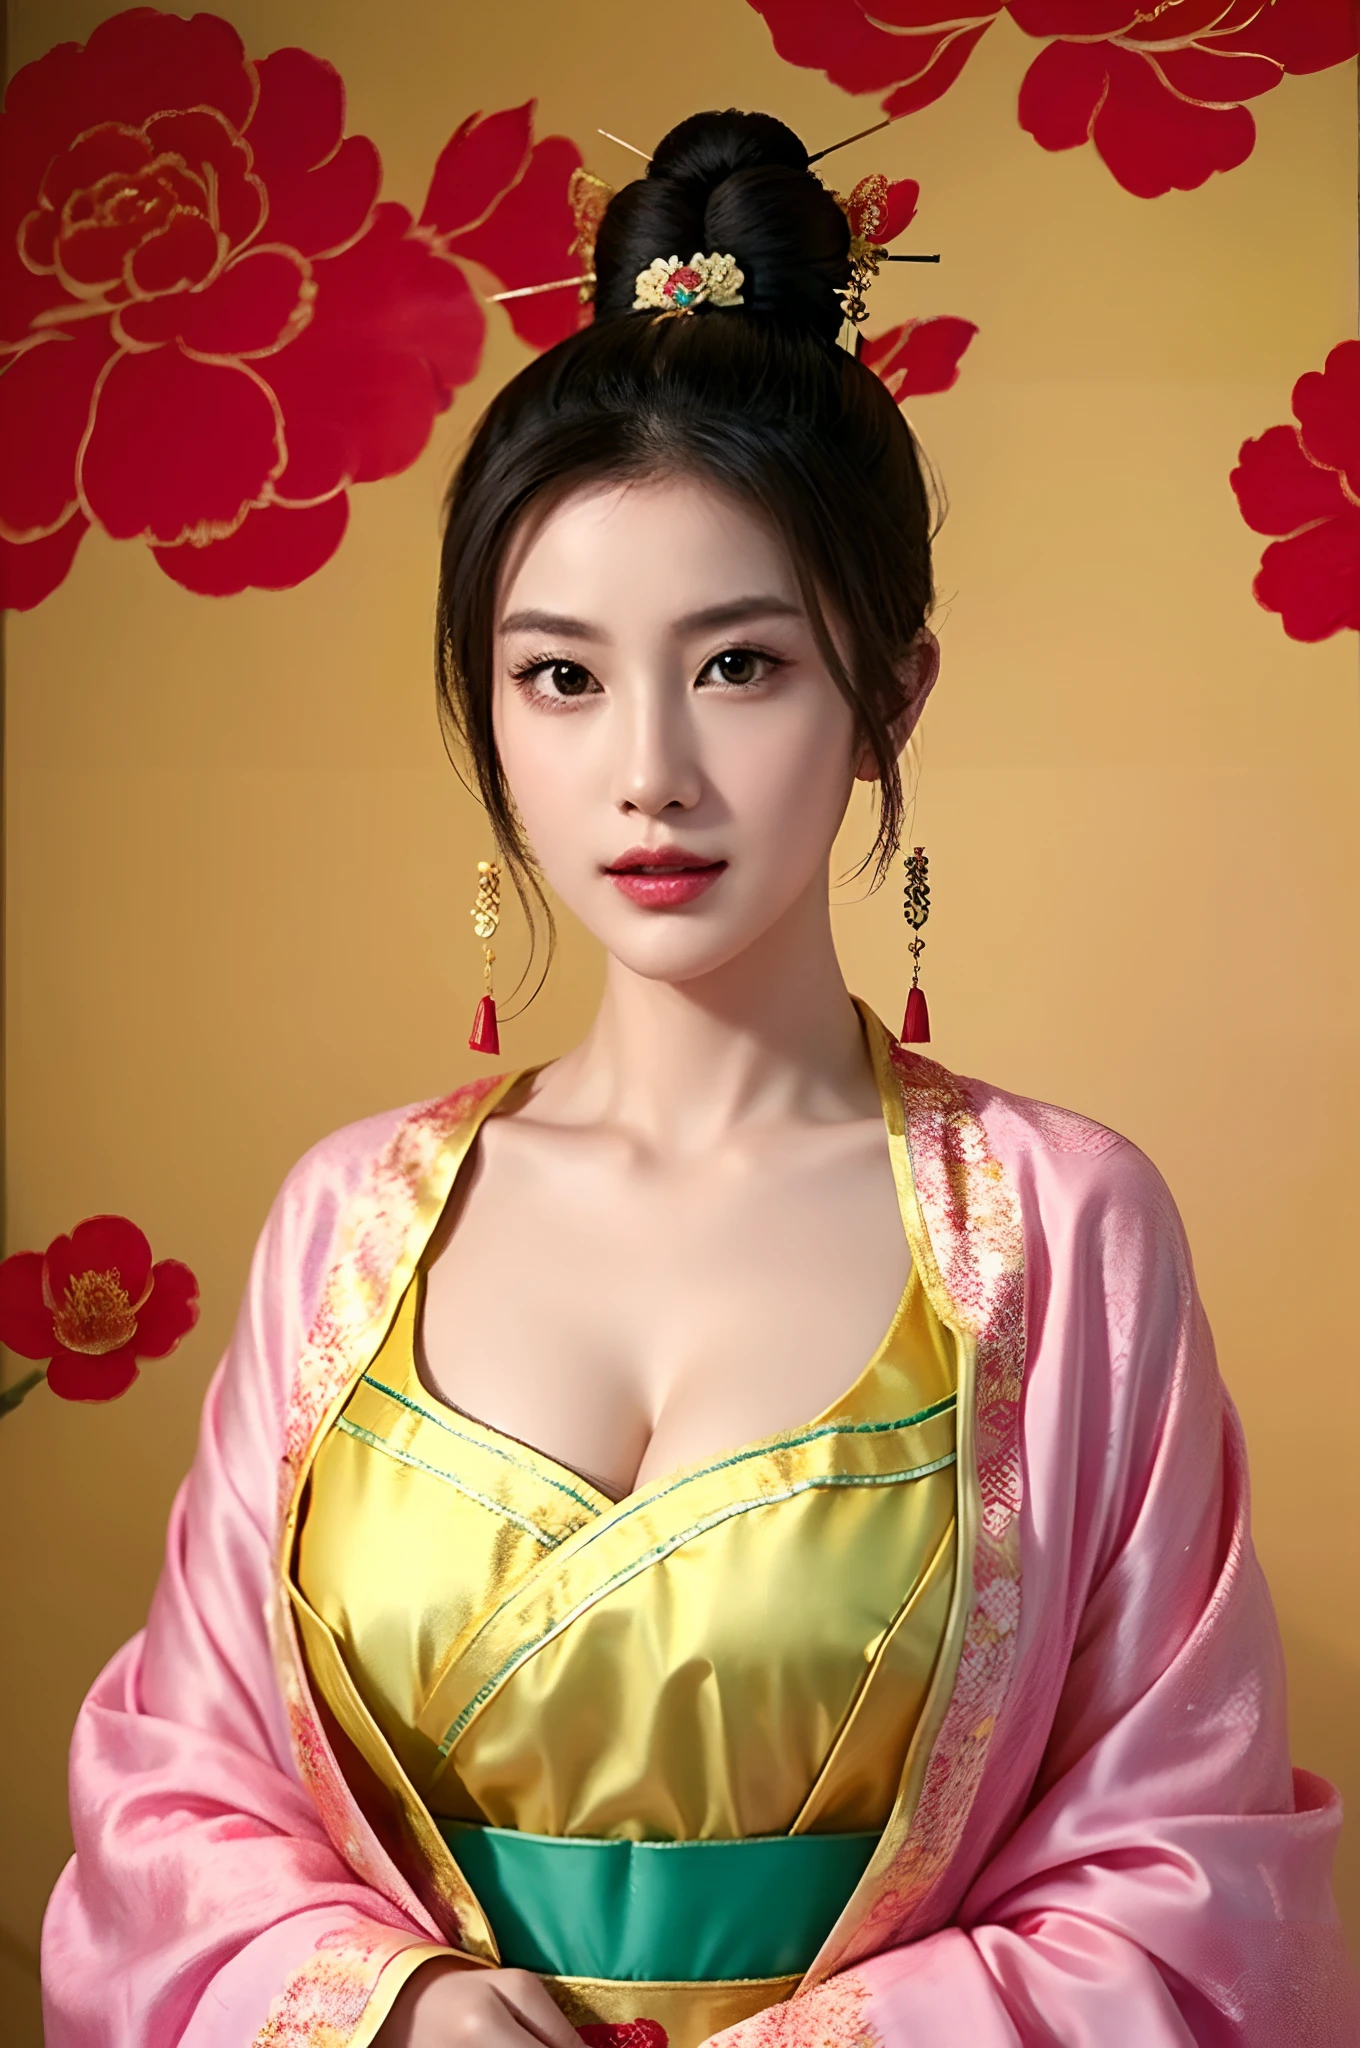 아름다운 여자야、상투,중국식 머리 장식:1.4,중국식 머리핀:1.4,높은 수준의 이미지 품질、SLR로 찍은 사진처럼、큰 가슴의 아름다움、관능적인 몸、중국 옷、긴 구멍、전통 치파오를 입은 여성을 묘사한 예술 작품 그리기